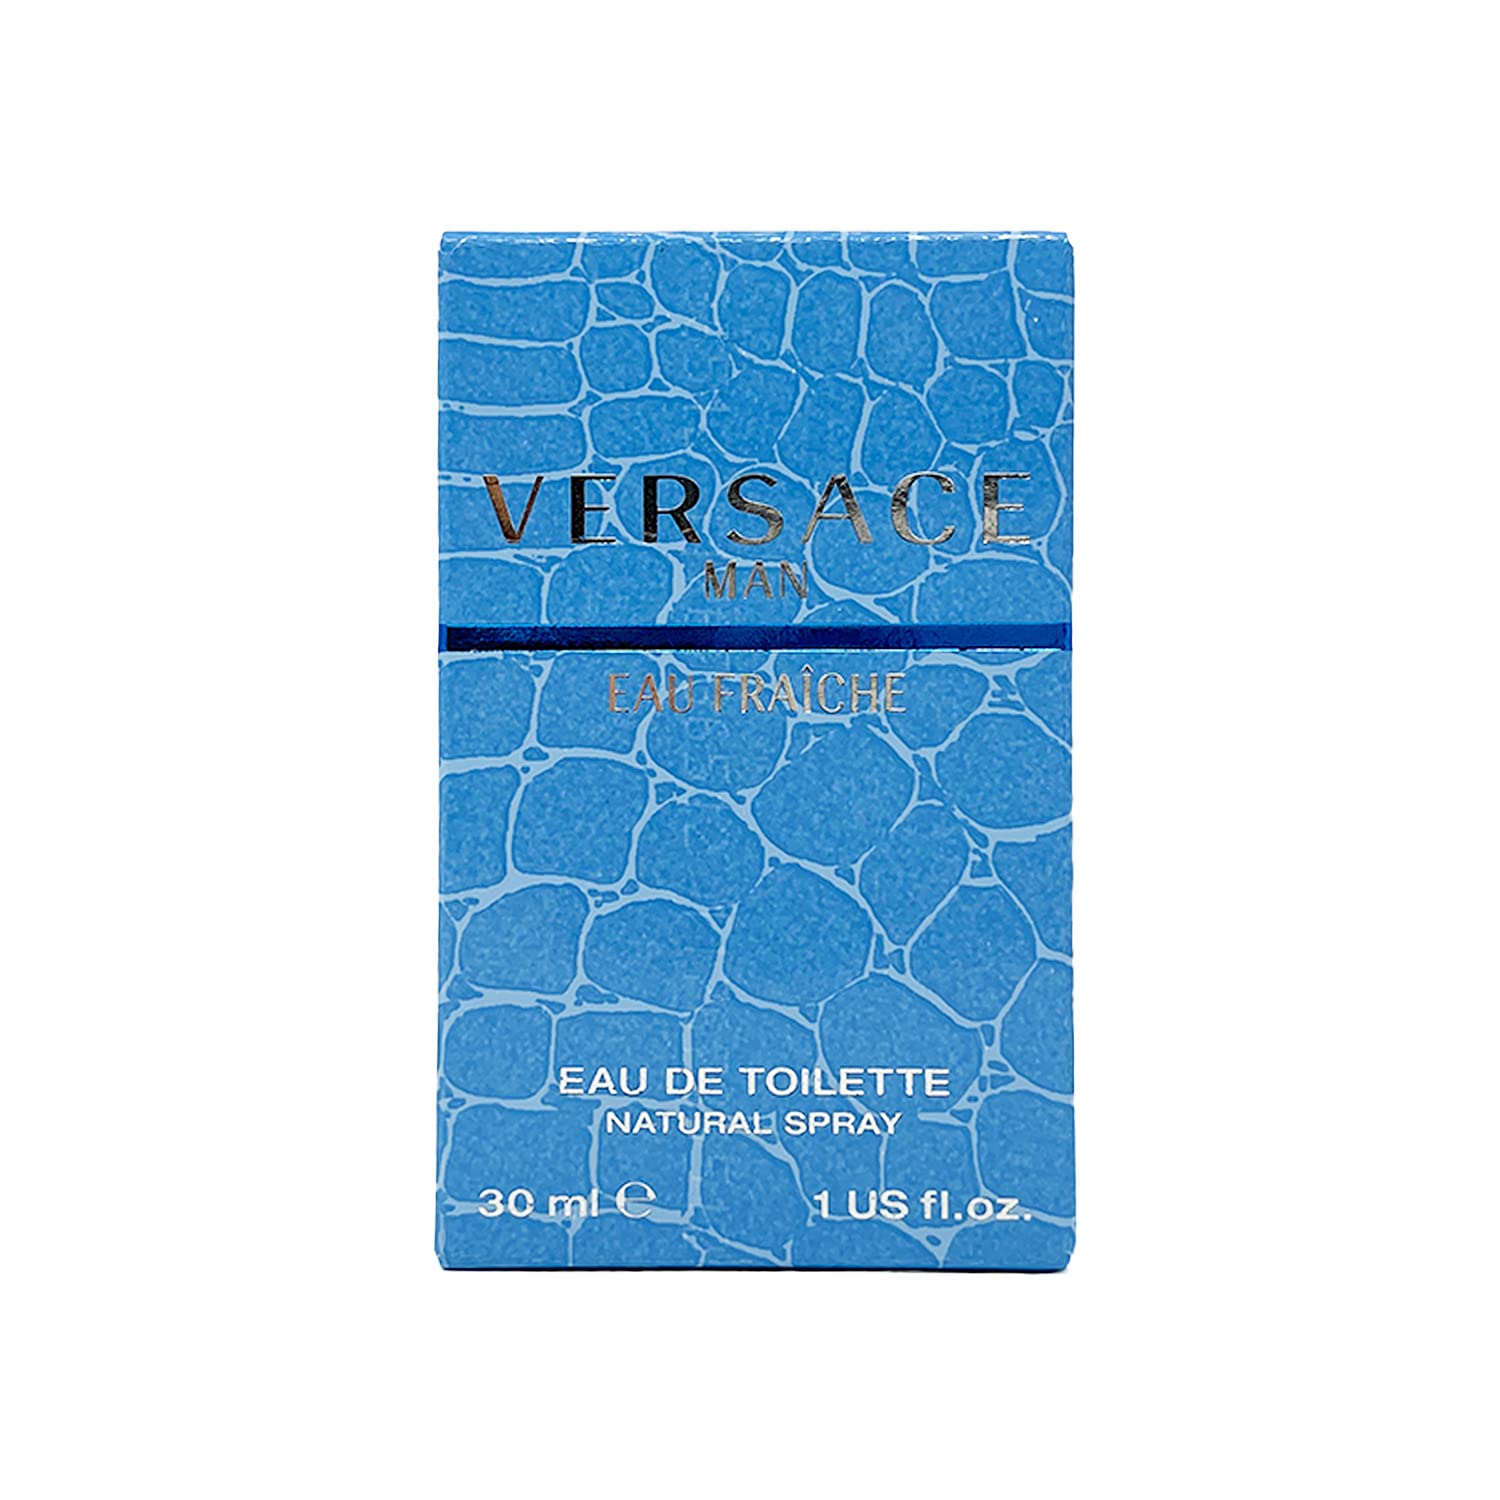 Versace Man by Versace Eau Fraiche Eau De Toilette Spray (Blue) 30 ml for Men